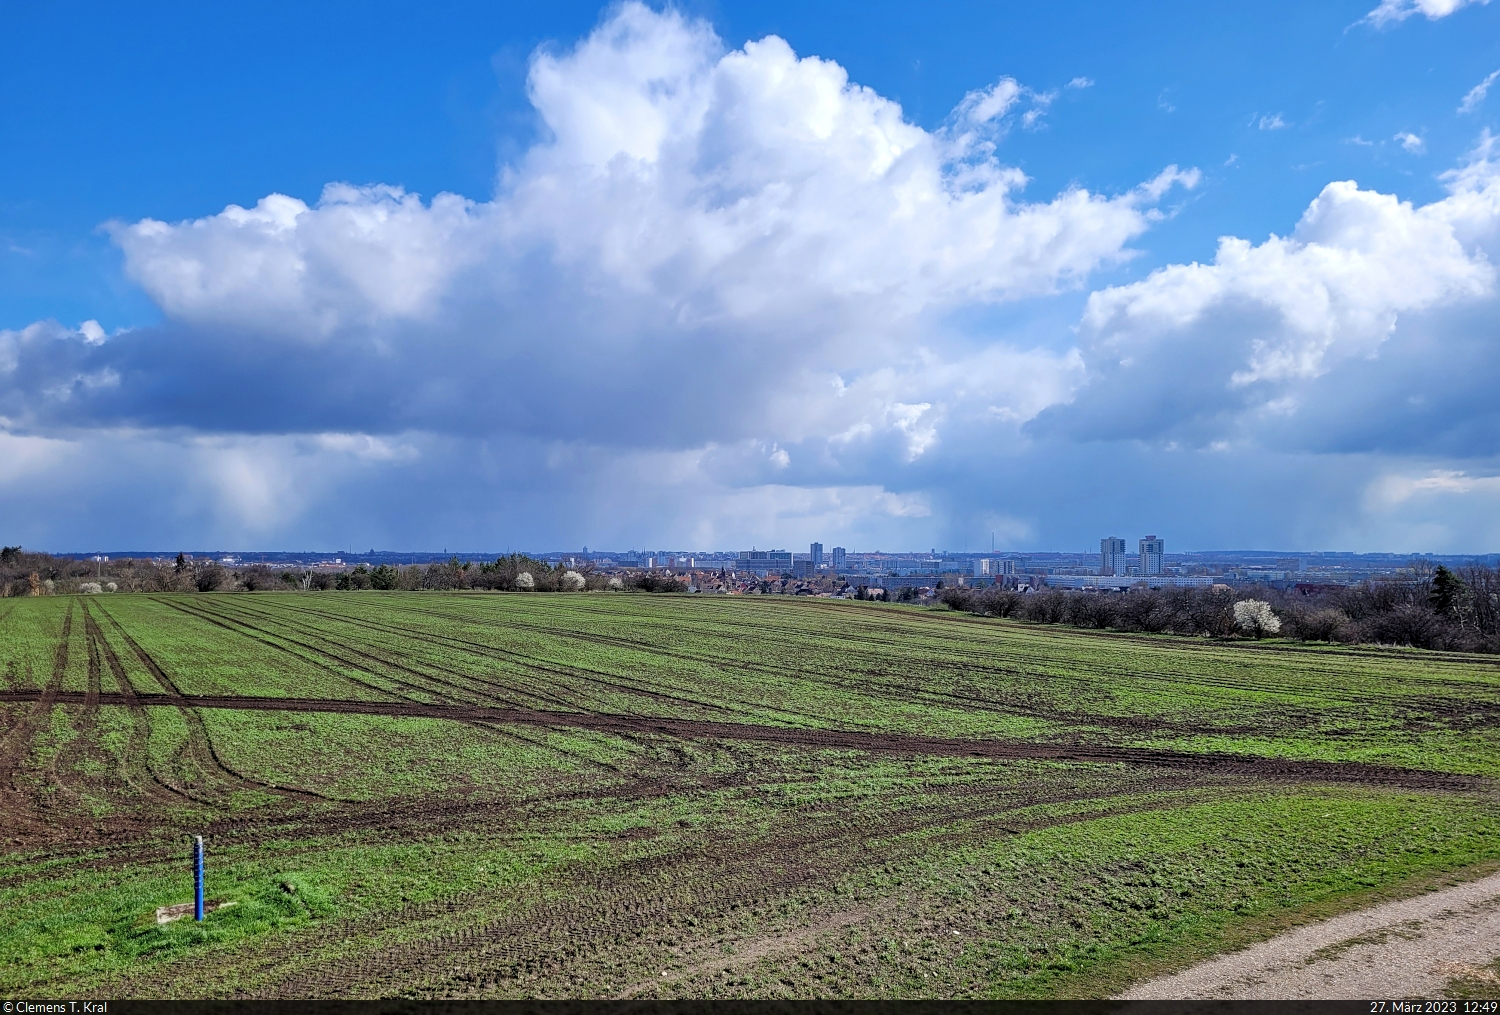 Die Skyline von Halle (Saale) mit mächtiger Wolkenformation an diesem sehr aprilhaften letzten Montag im März. Gesehen am Granauer Berg westlich von Halle-Nietleben.

🕓 27.3.2023 | 12:49 Uhr